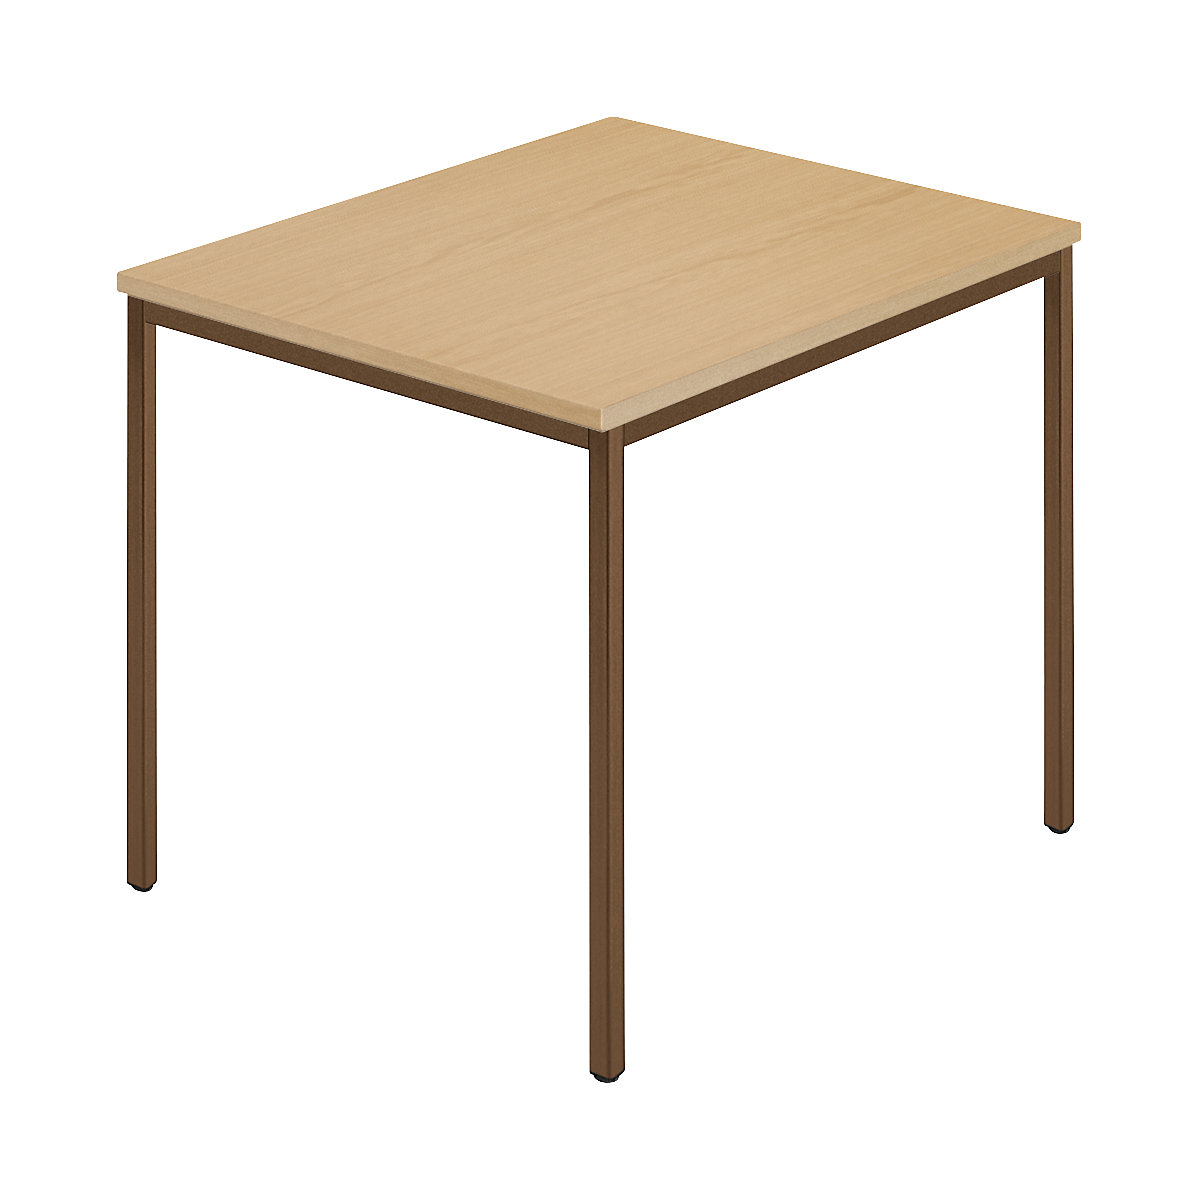 Table rectangulaire, tube carré plastifié, l x p 800 x 800 mm, hêtre naturel / brun-5